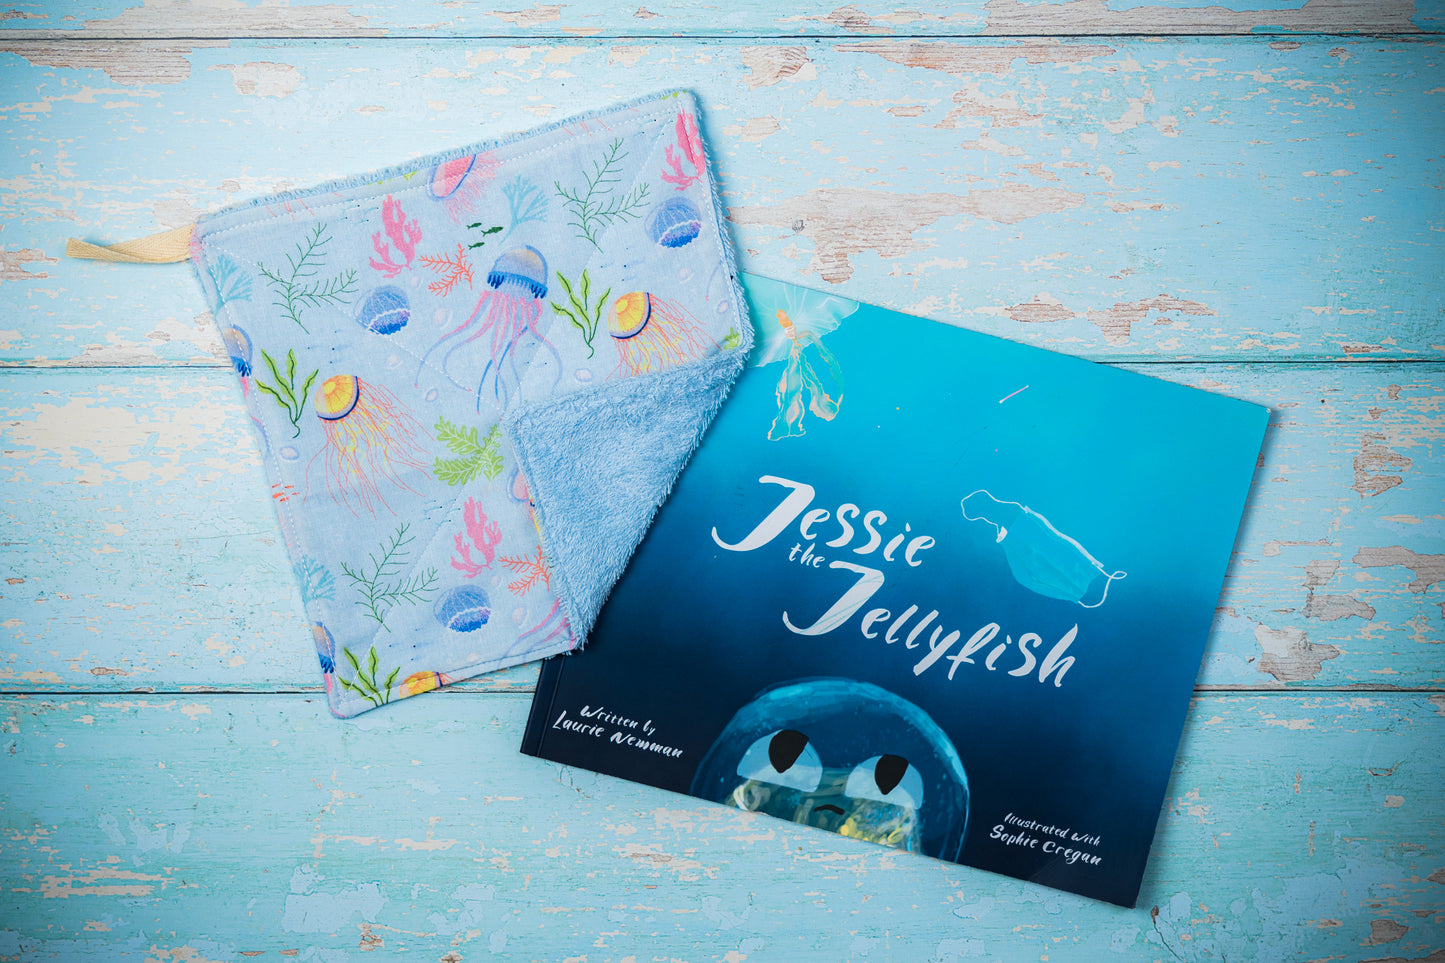 Jessie the Jellyfish book